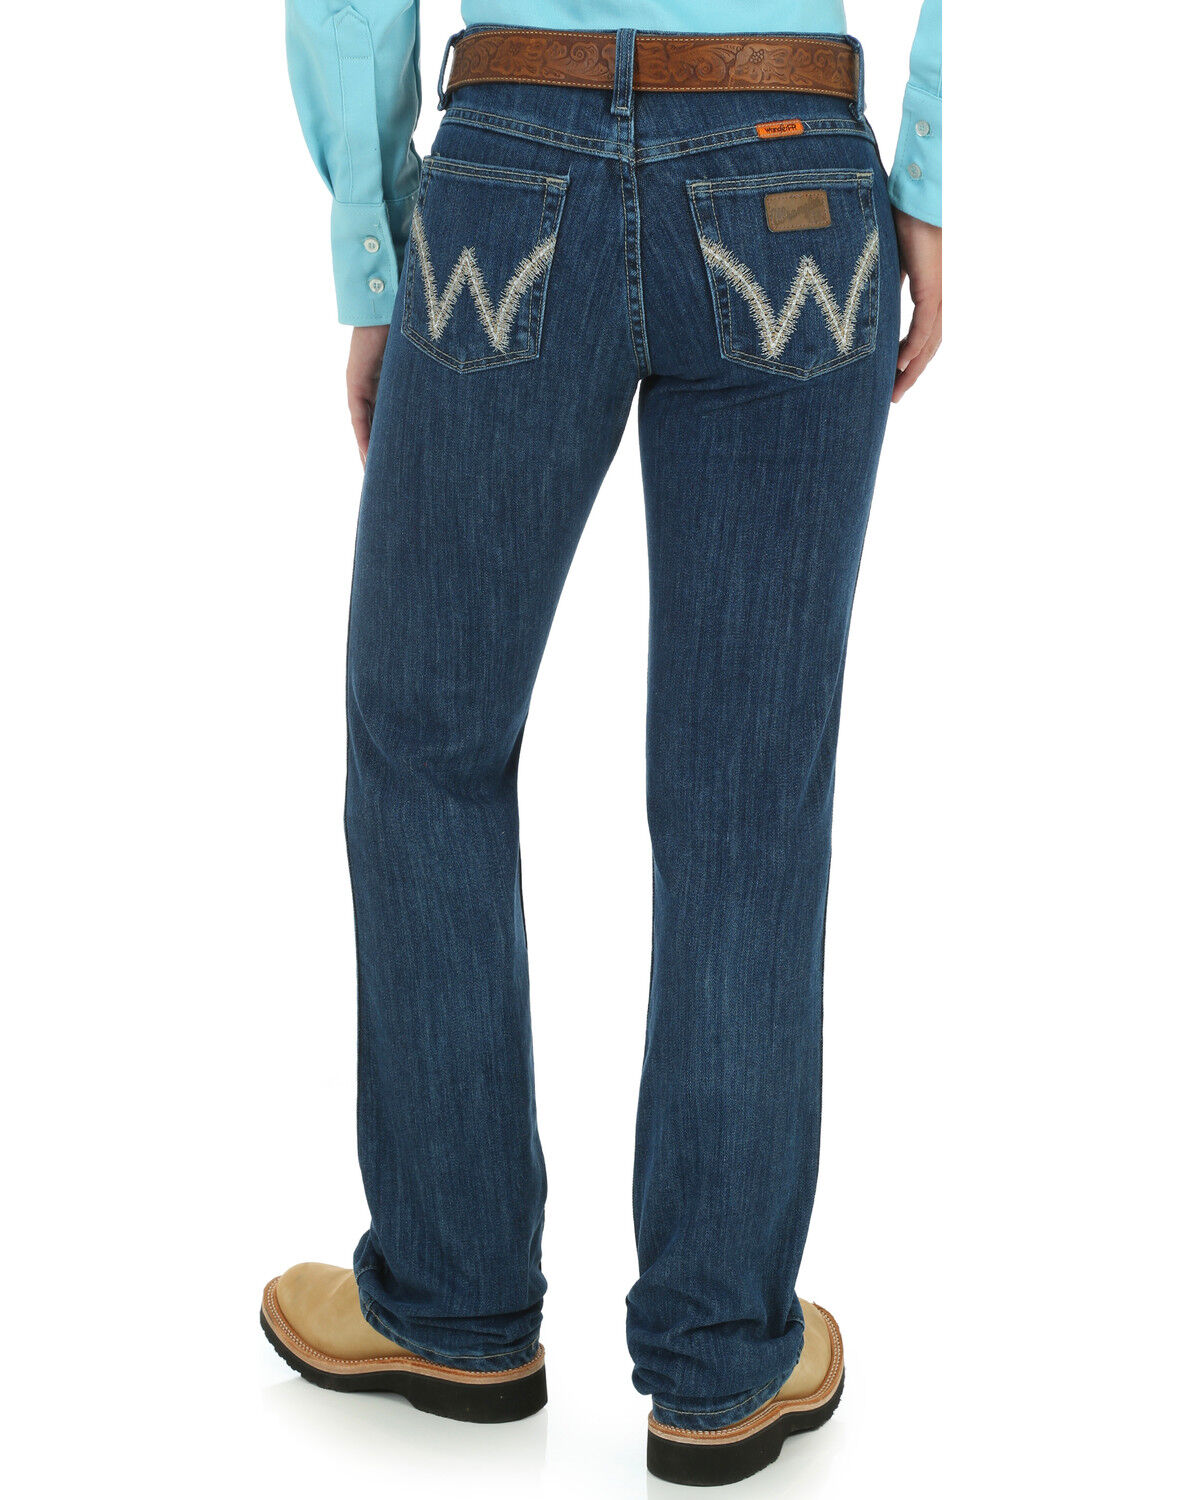 women's work jeans